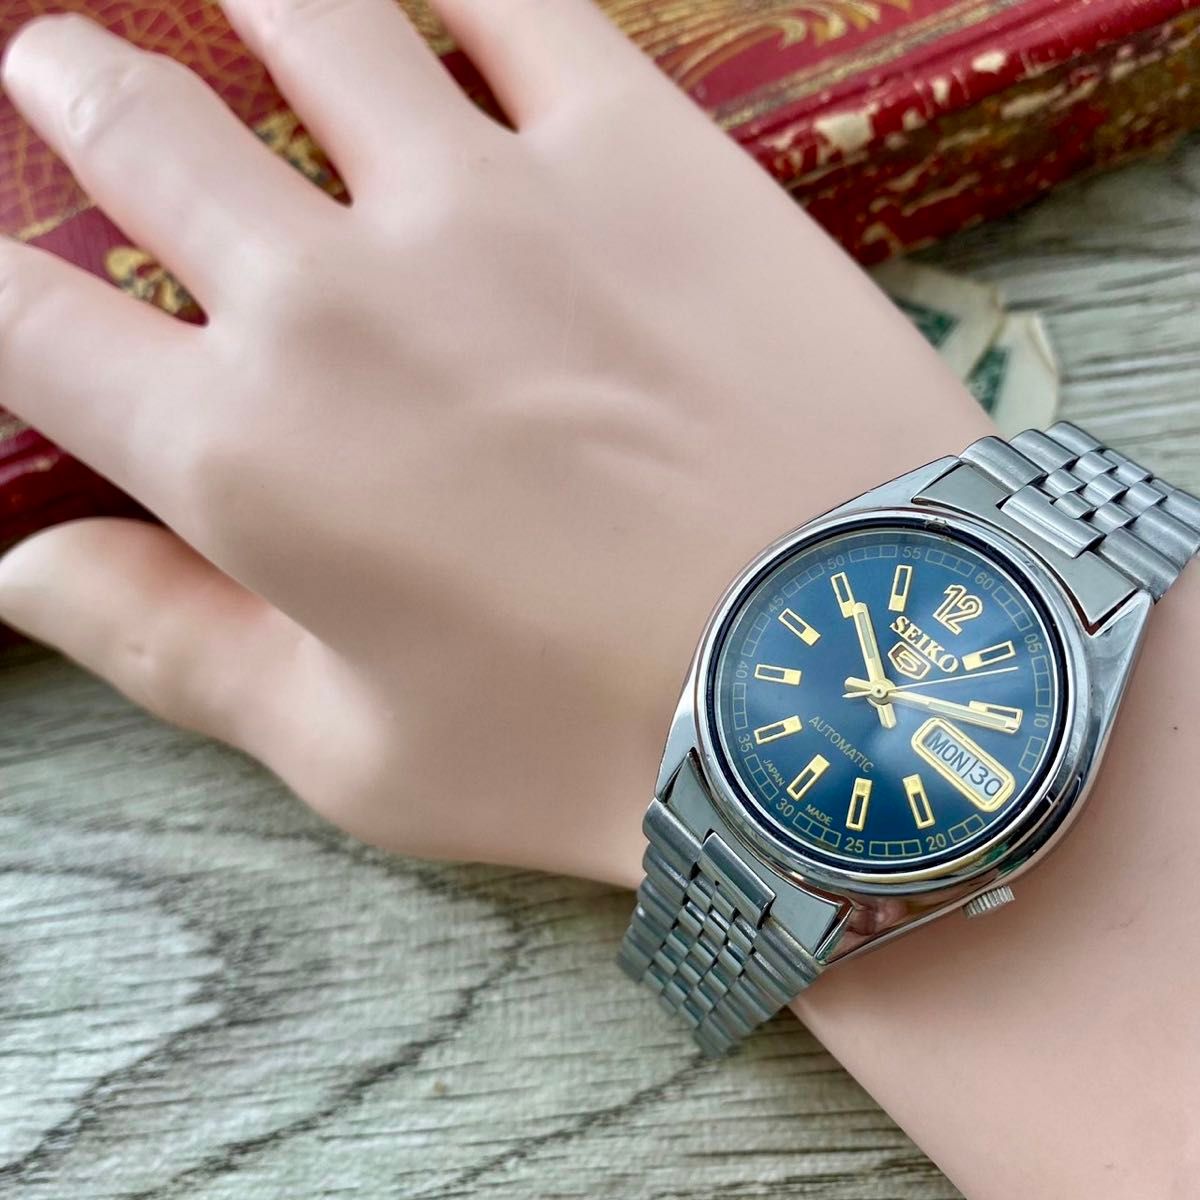 【レトロ可愛い】セイコー5 メンズ腕時計 ブルー 自動巻き ヴィンテージ